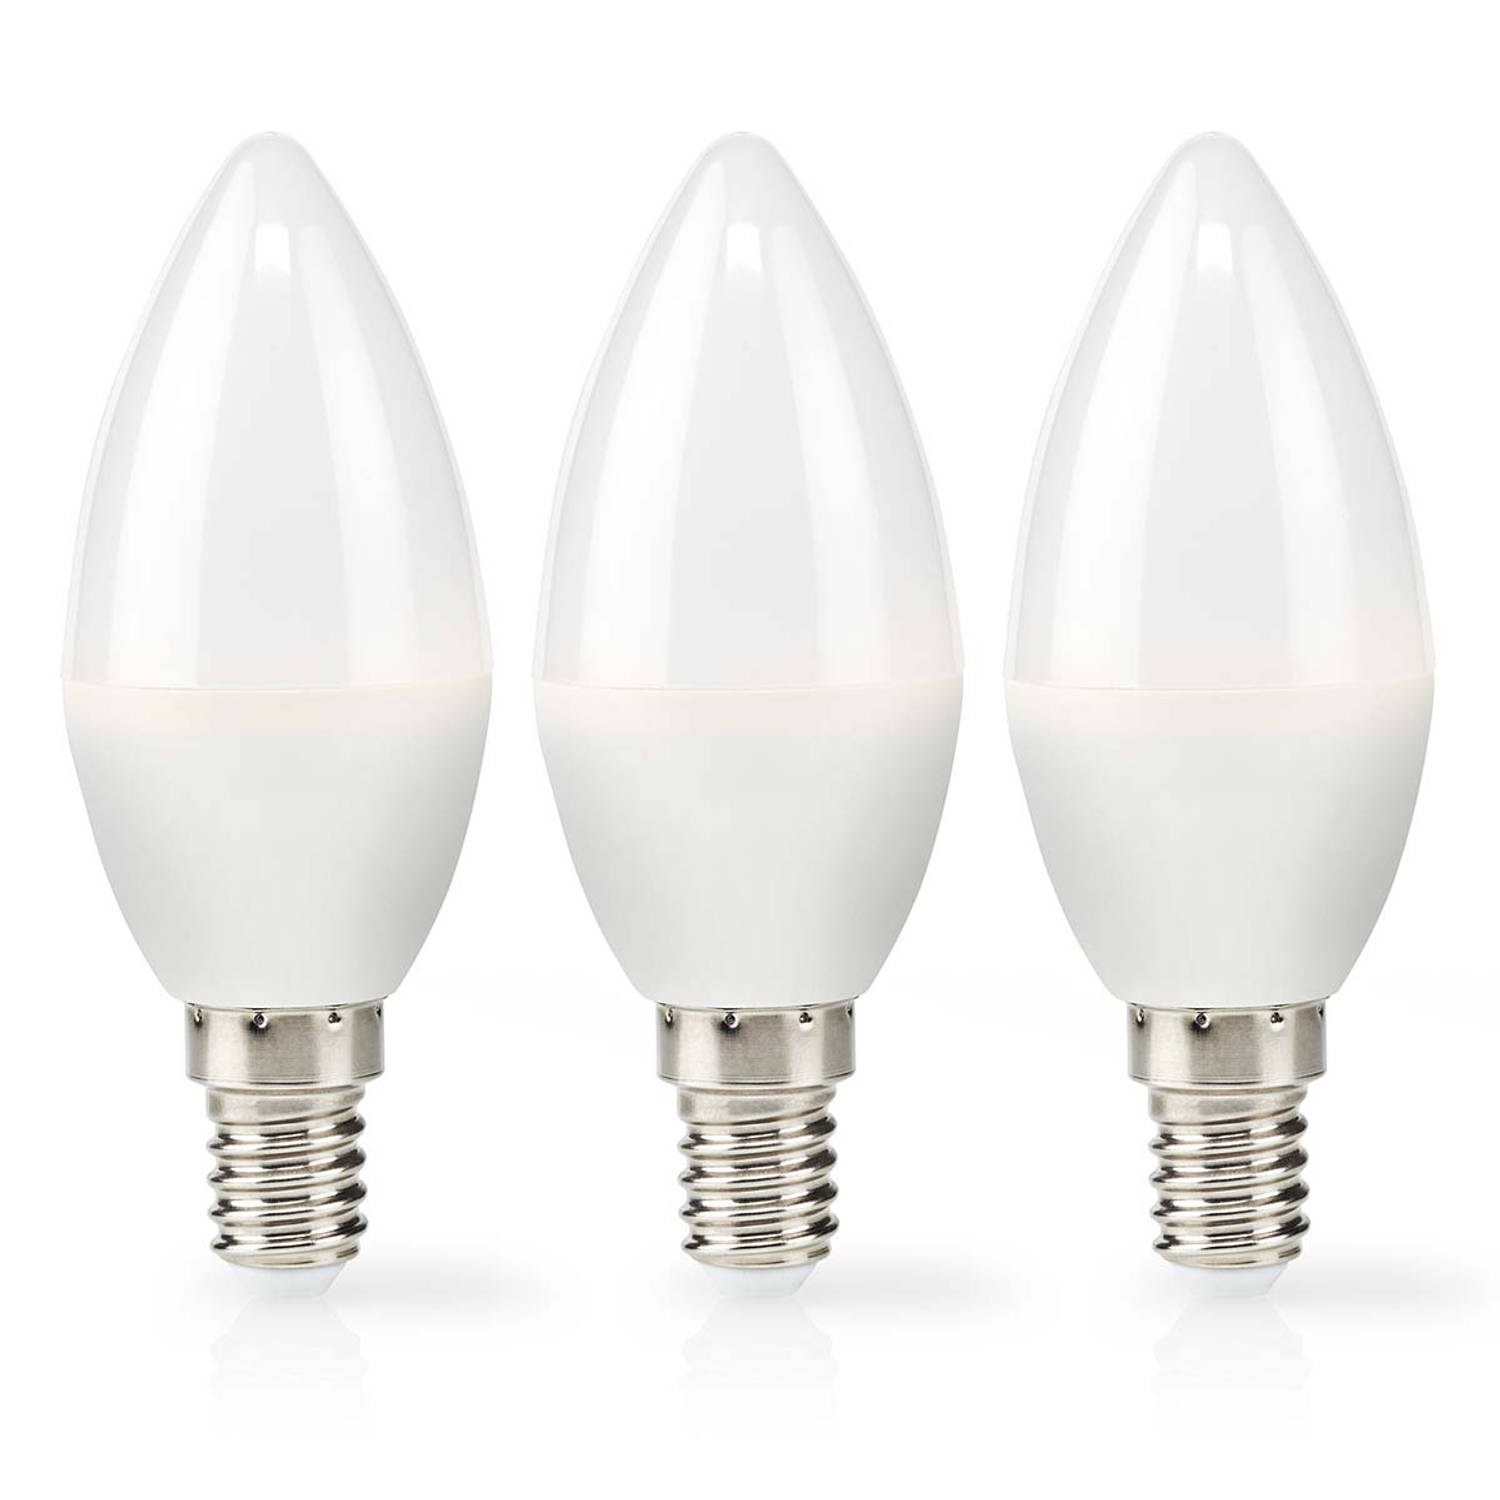 LED-Lamp E14 | 2.8 W | 250 lm | 2700 K | 3 stuks | 1 stuks LBE14C351P3